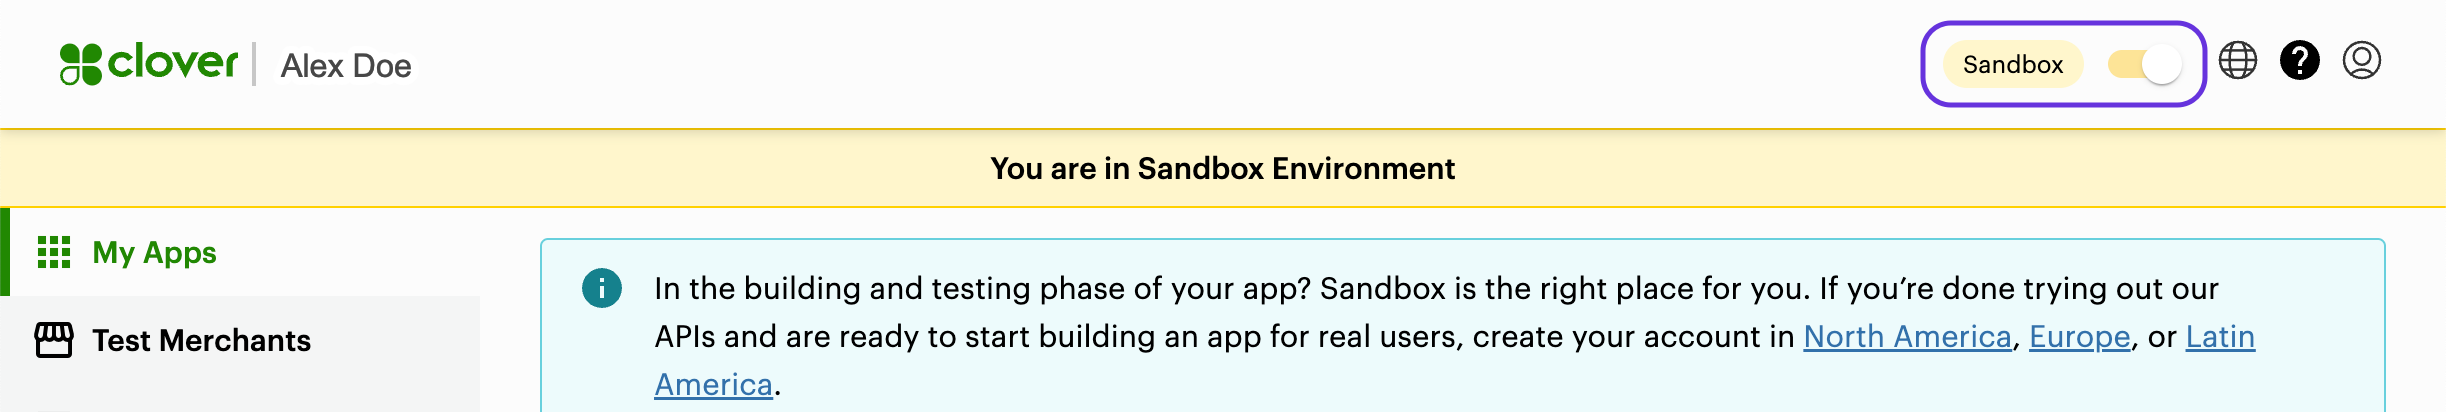 Global Developer Dashboard: Sandbox toggle icon